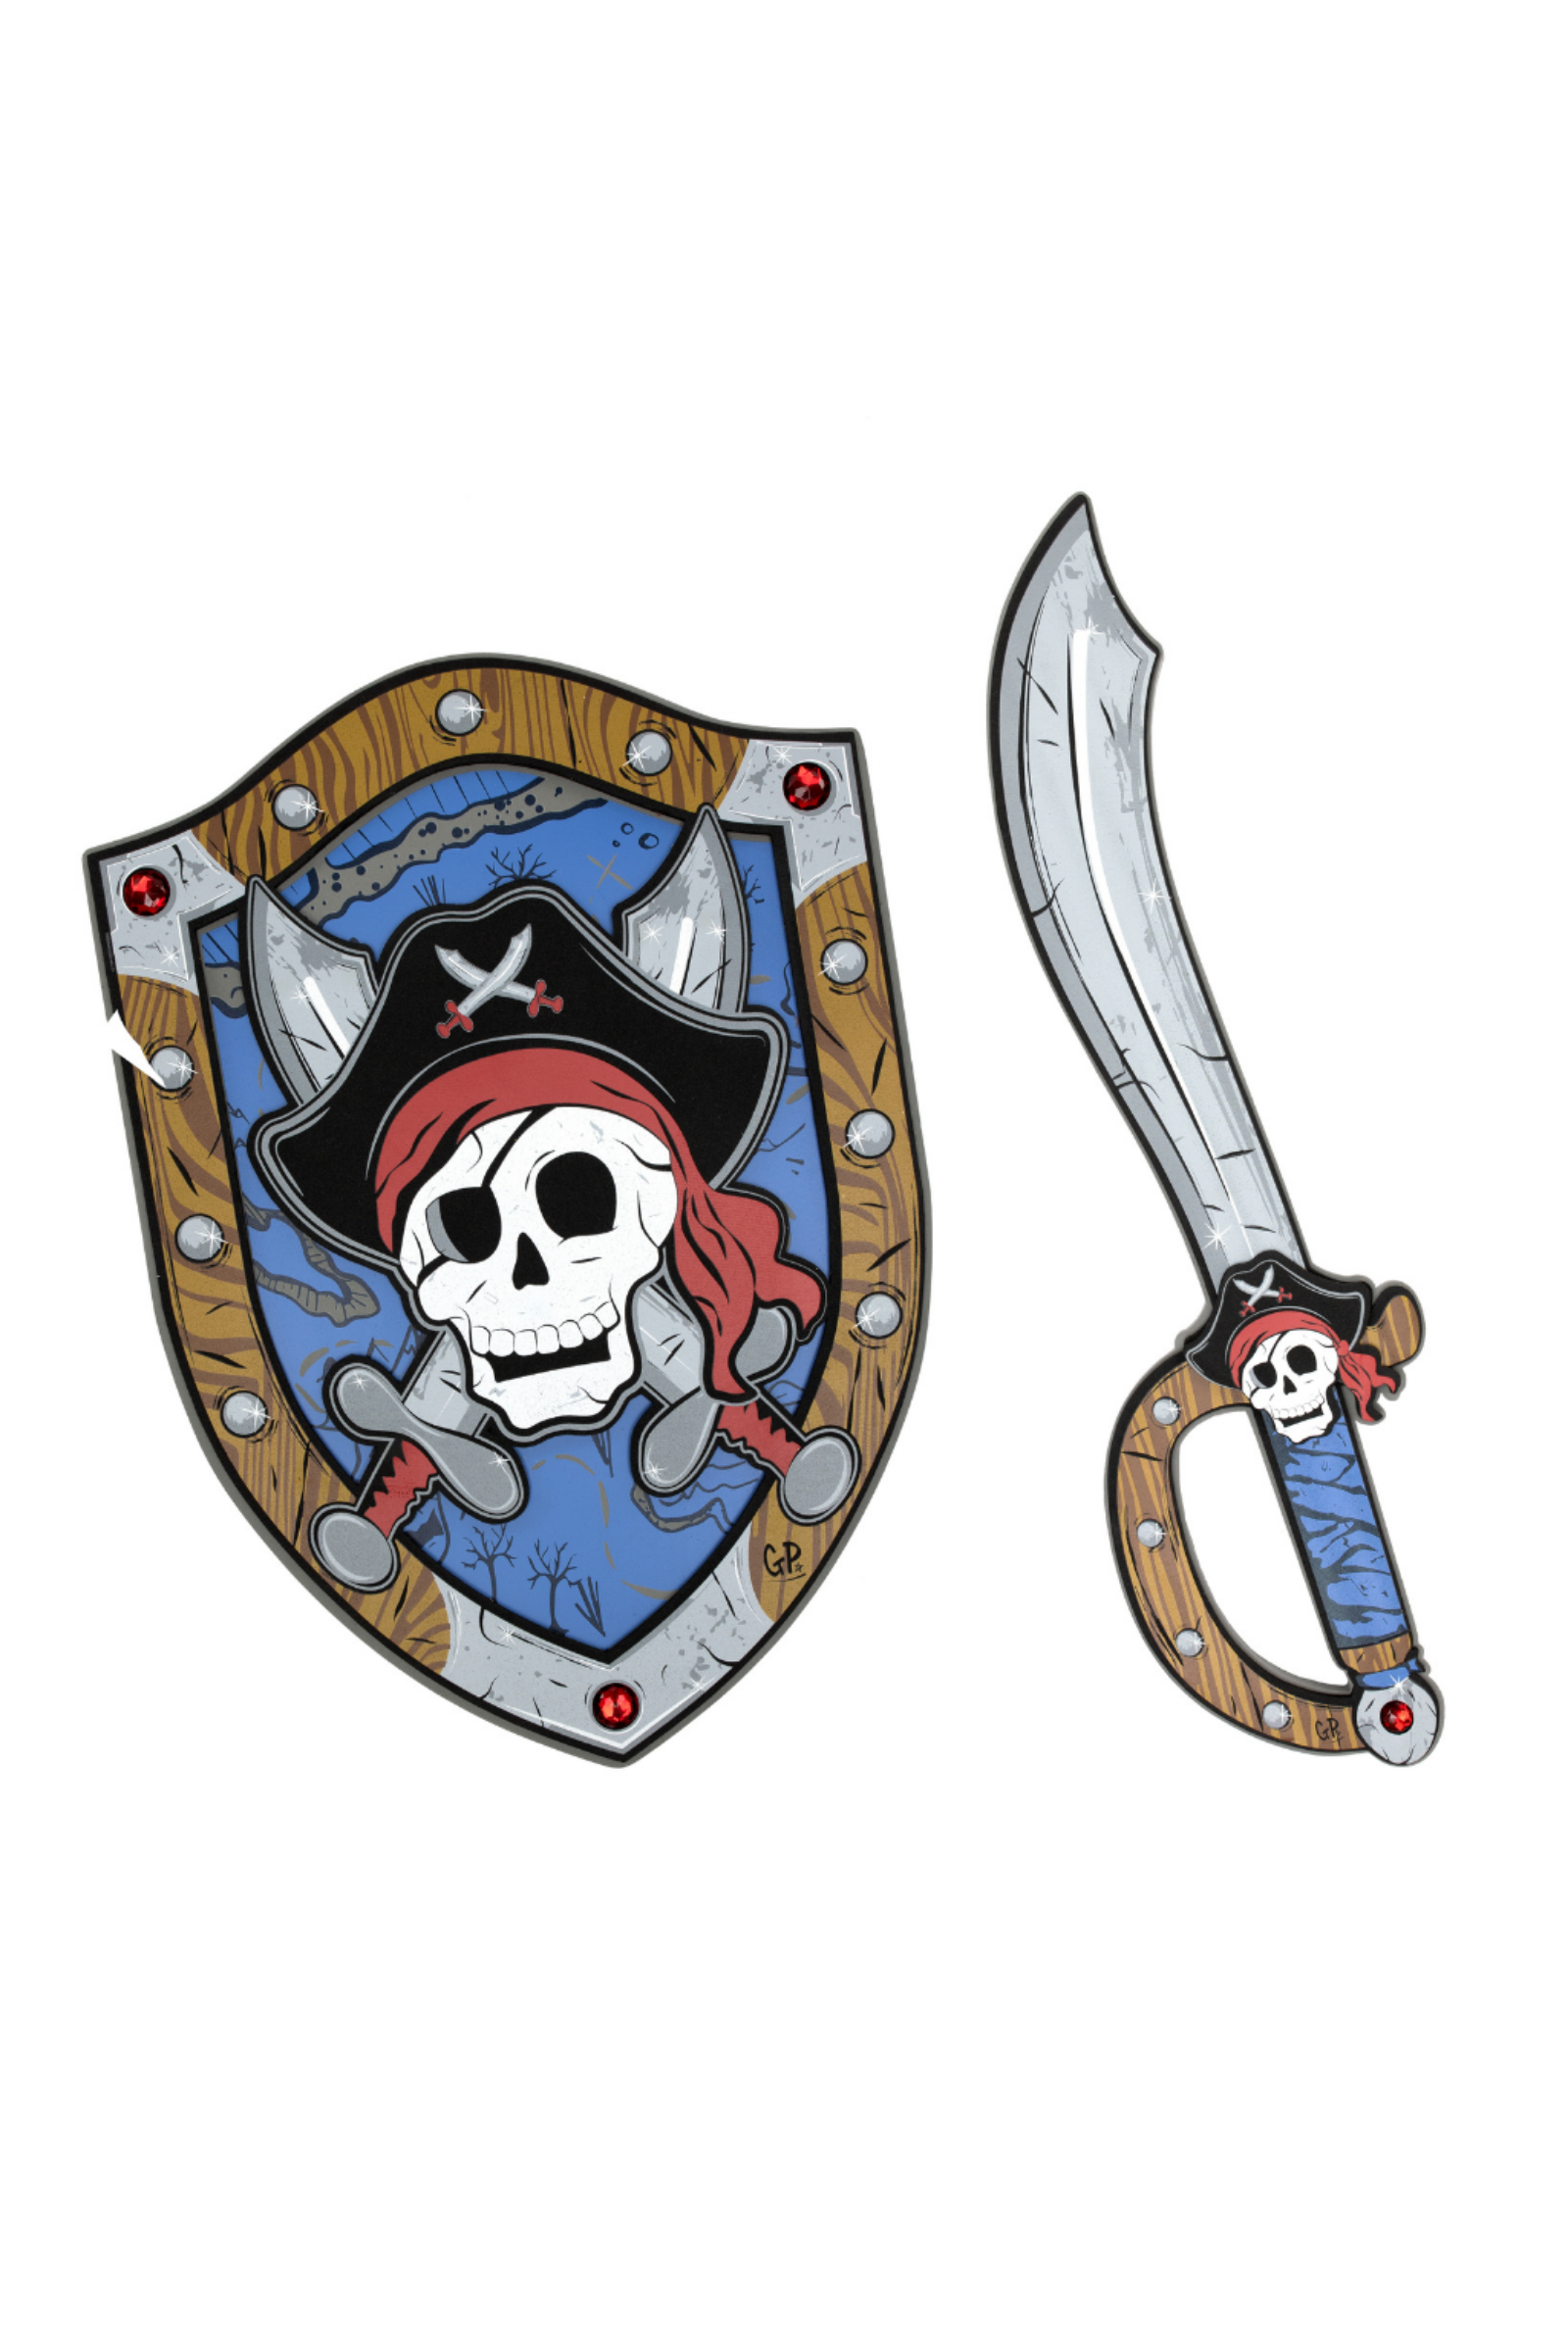 Captain Skully Pirate EVA Shield